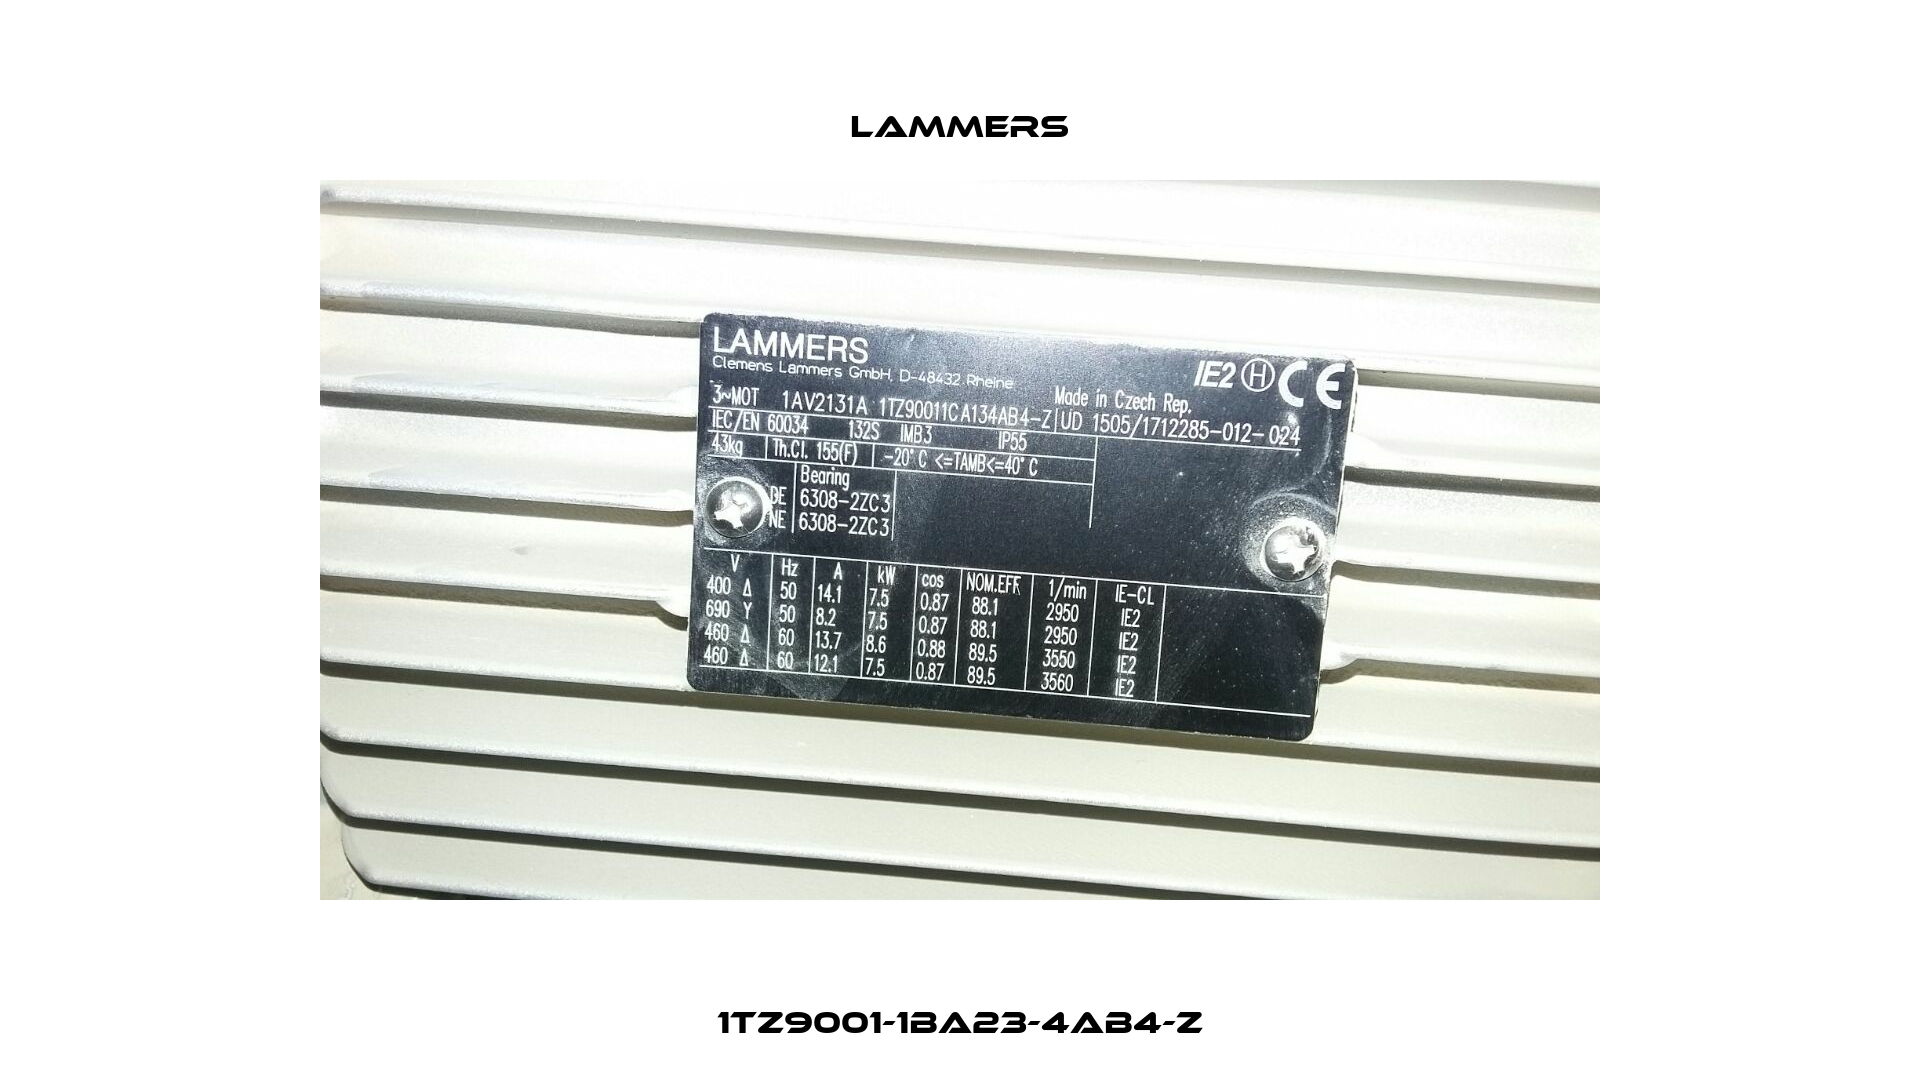 1TZ9001-1BA23-4AB4-Z Lammers